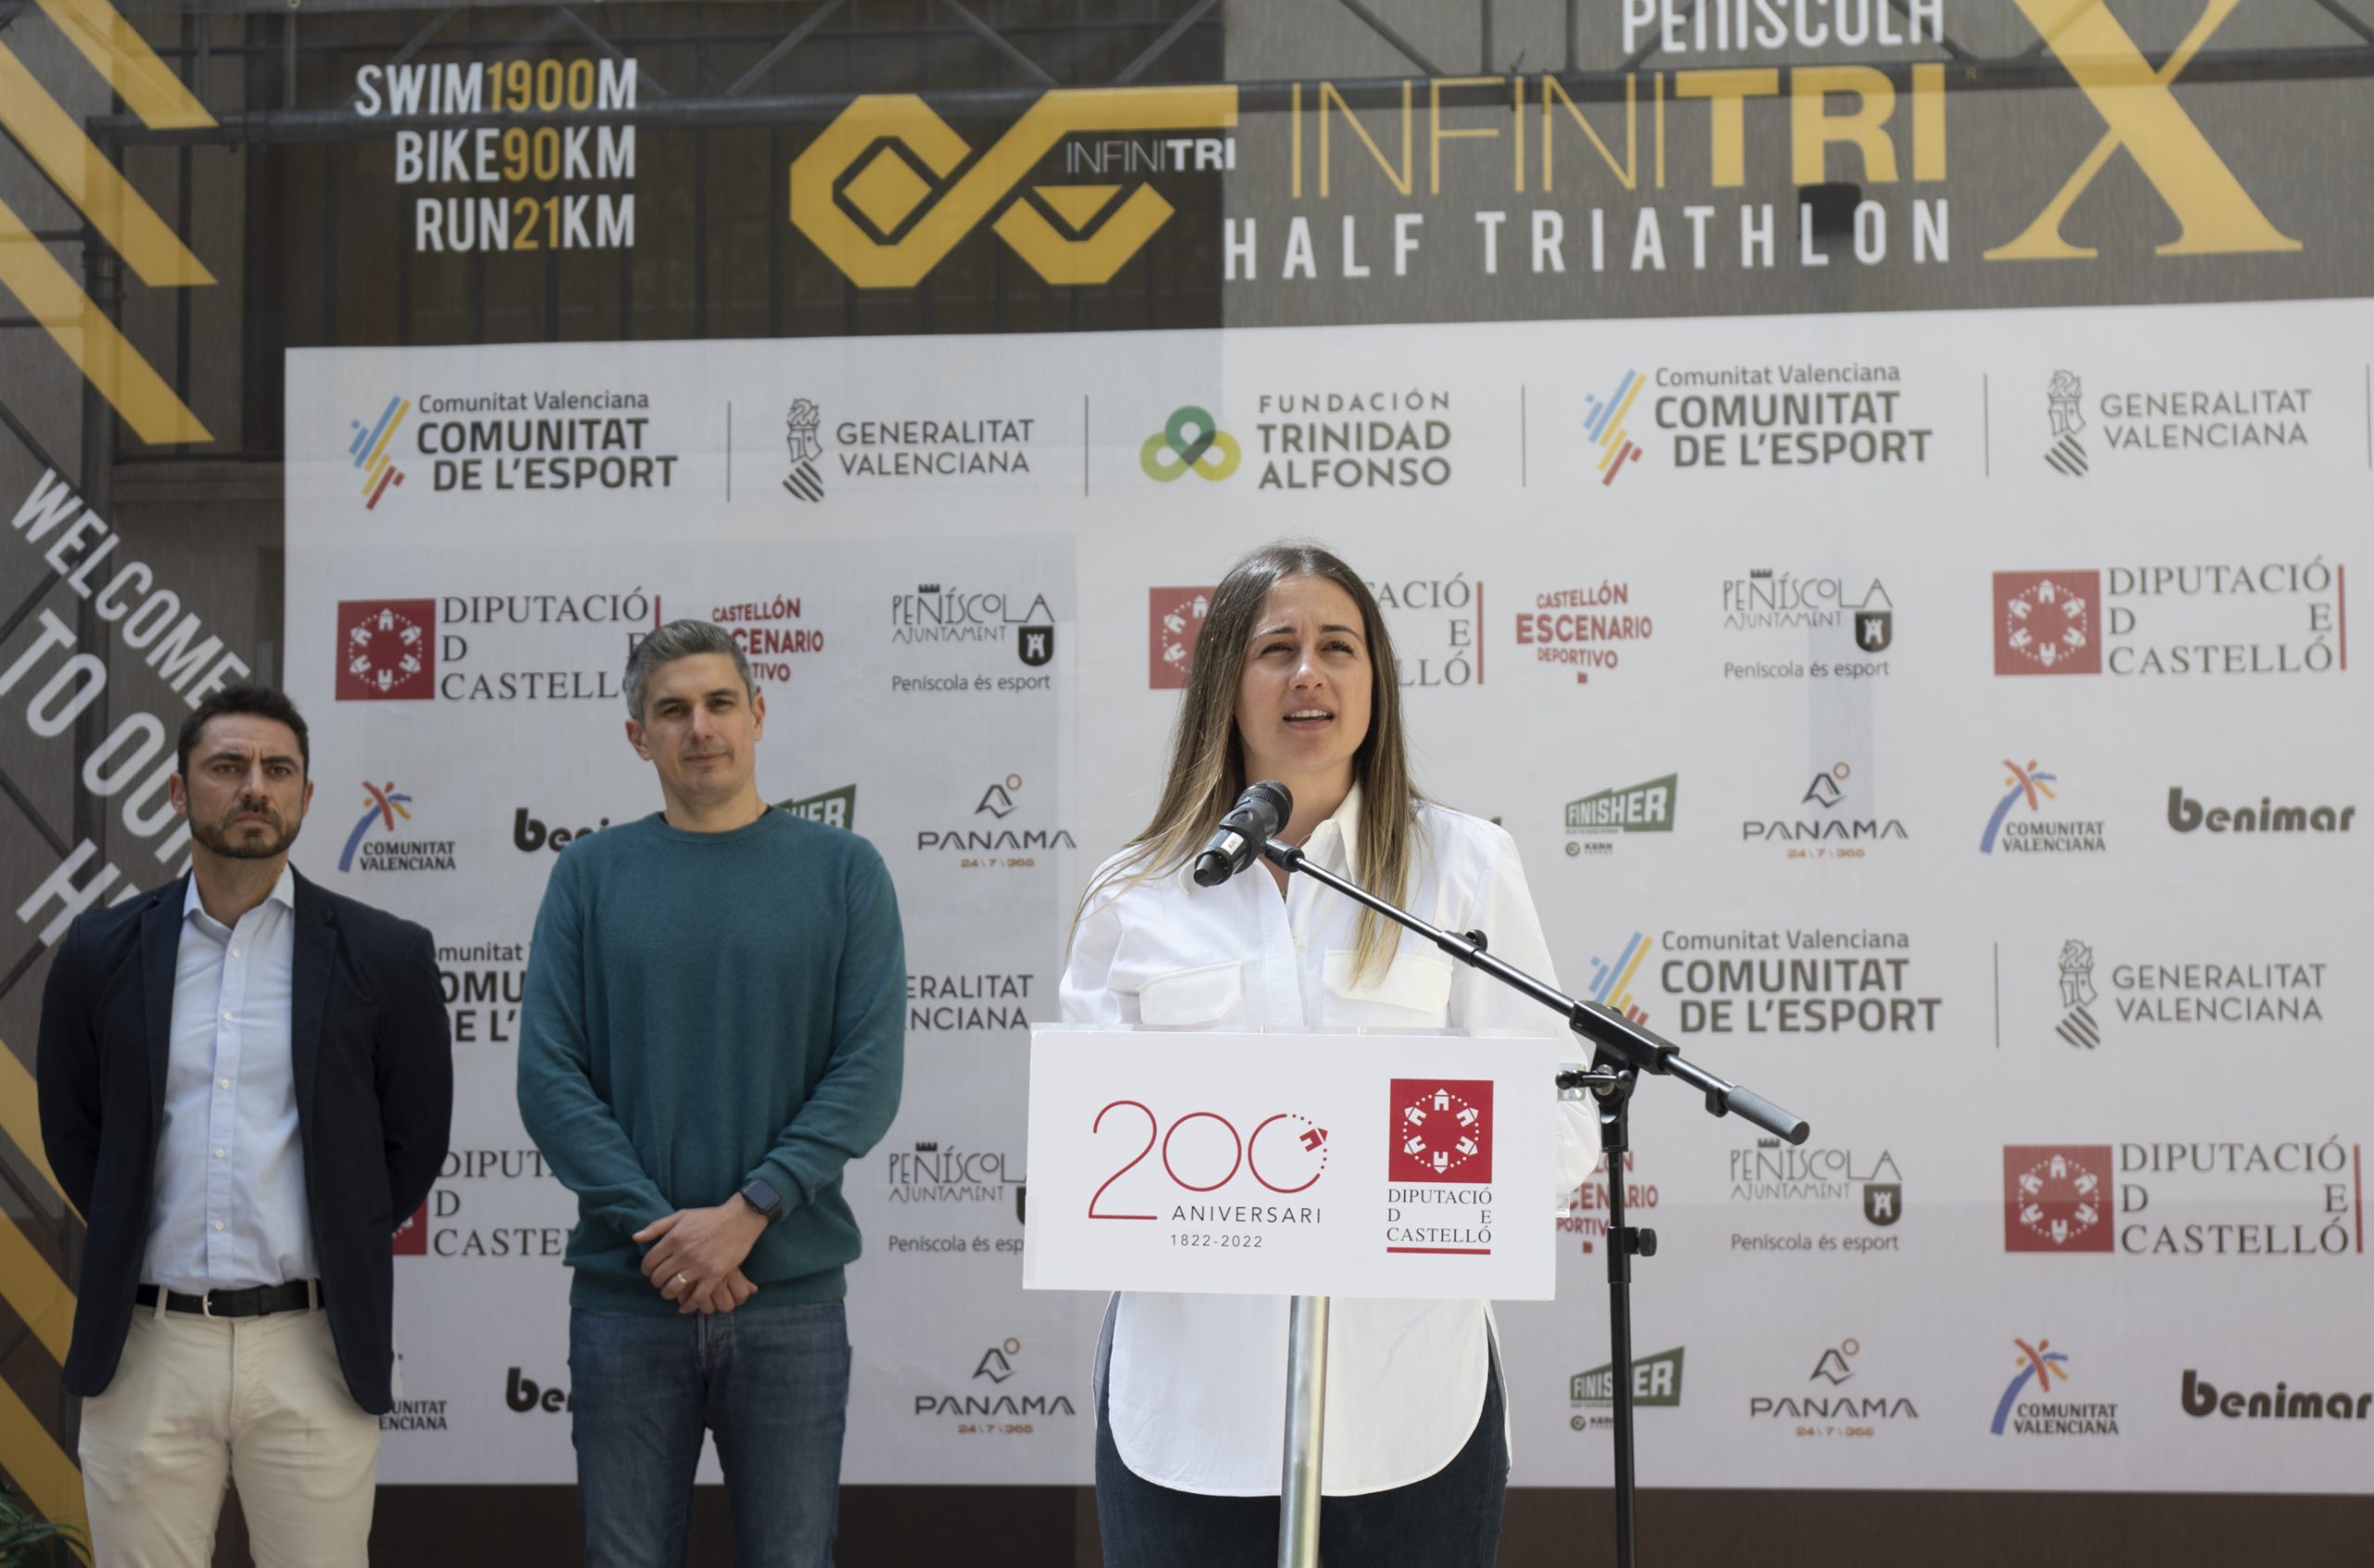 La Diputación de Castellón presenta la edición de la Infinitri Half Triathlon Peñíscola con más mujeres de su historia